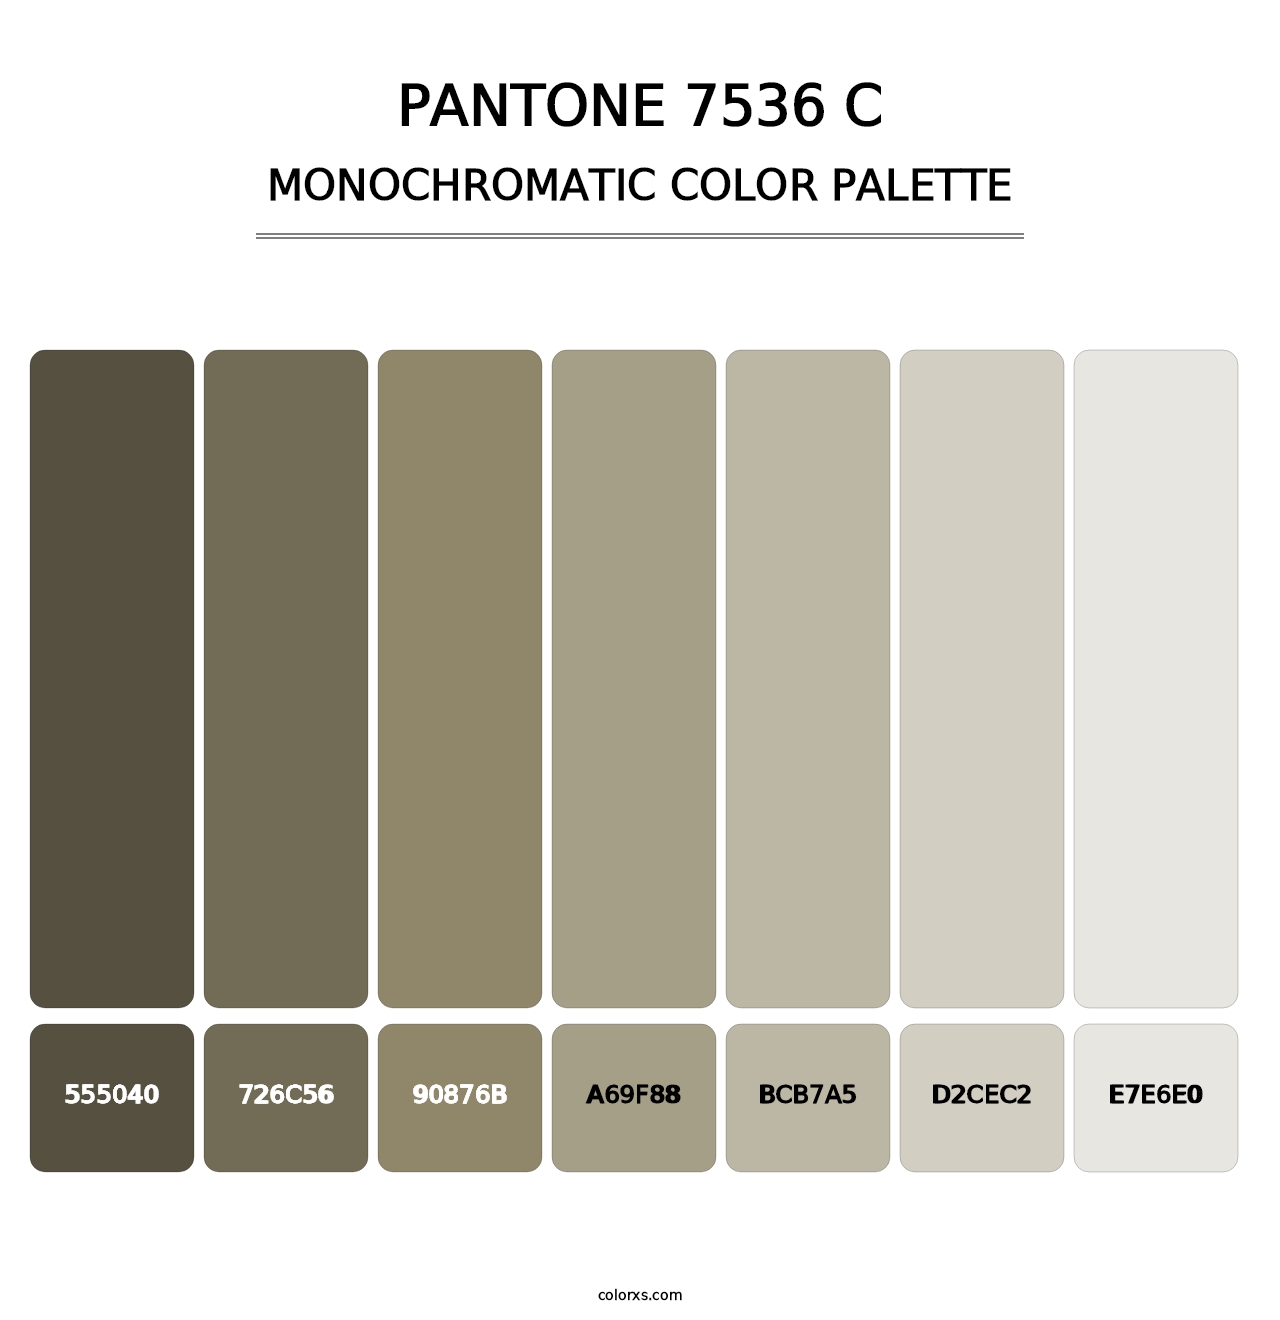 PANTONE 7536 C - Monochromatic Color Palette